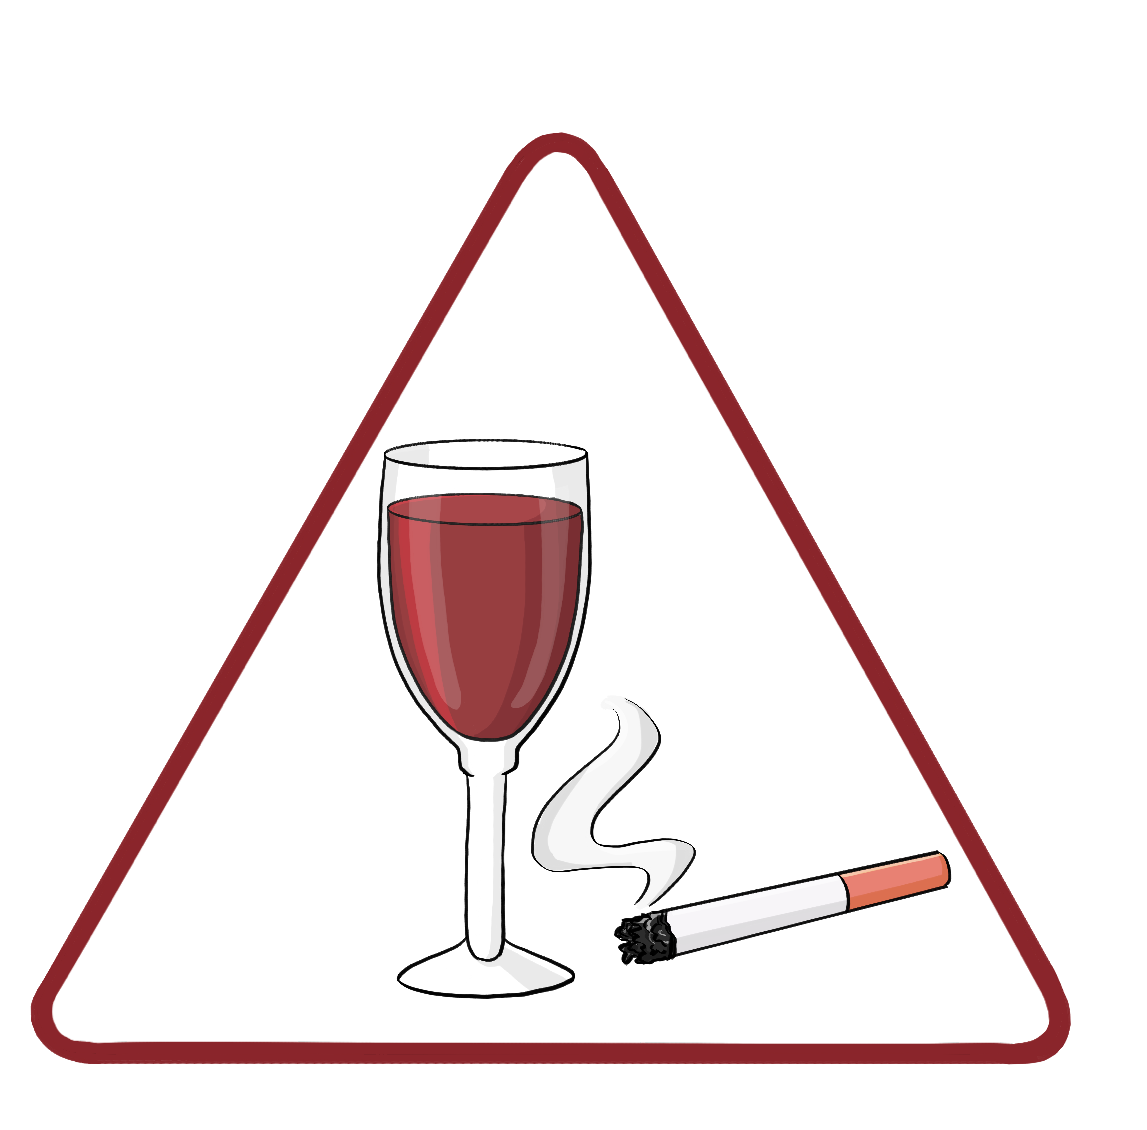 Ein Glas Wein und eine brennende Zigarette in einem roten Dreieck.